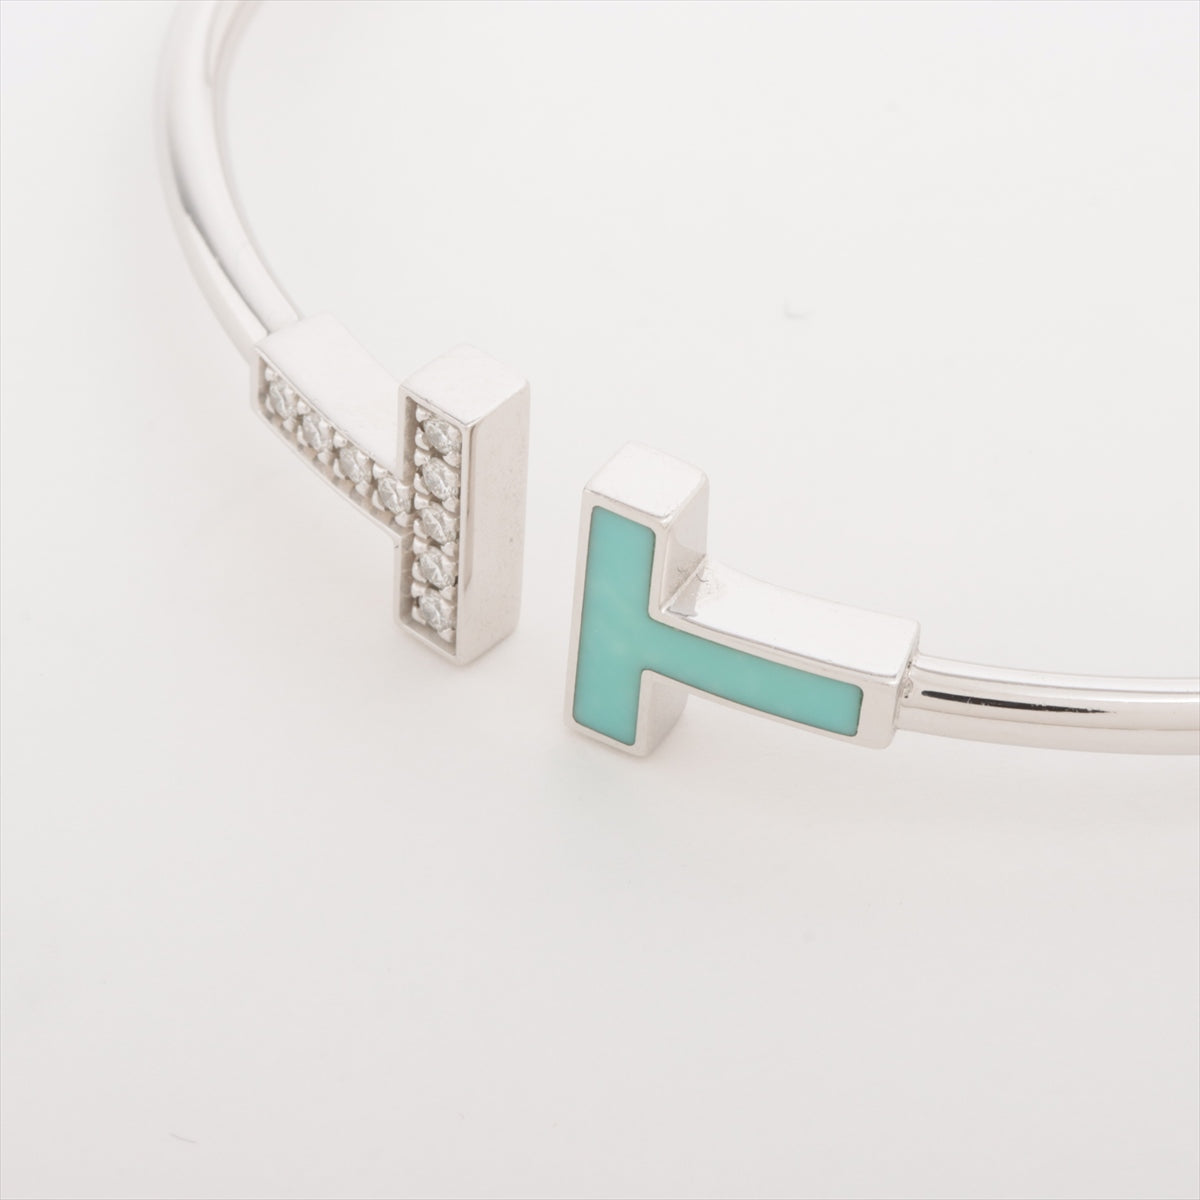 Tiffany T Wire Diamond Turquoise Bracelet 750(WG) 7.7g